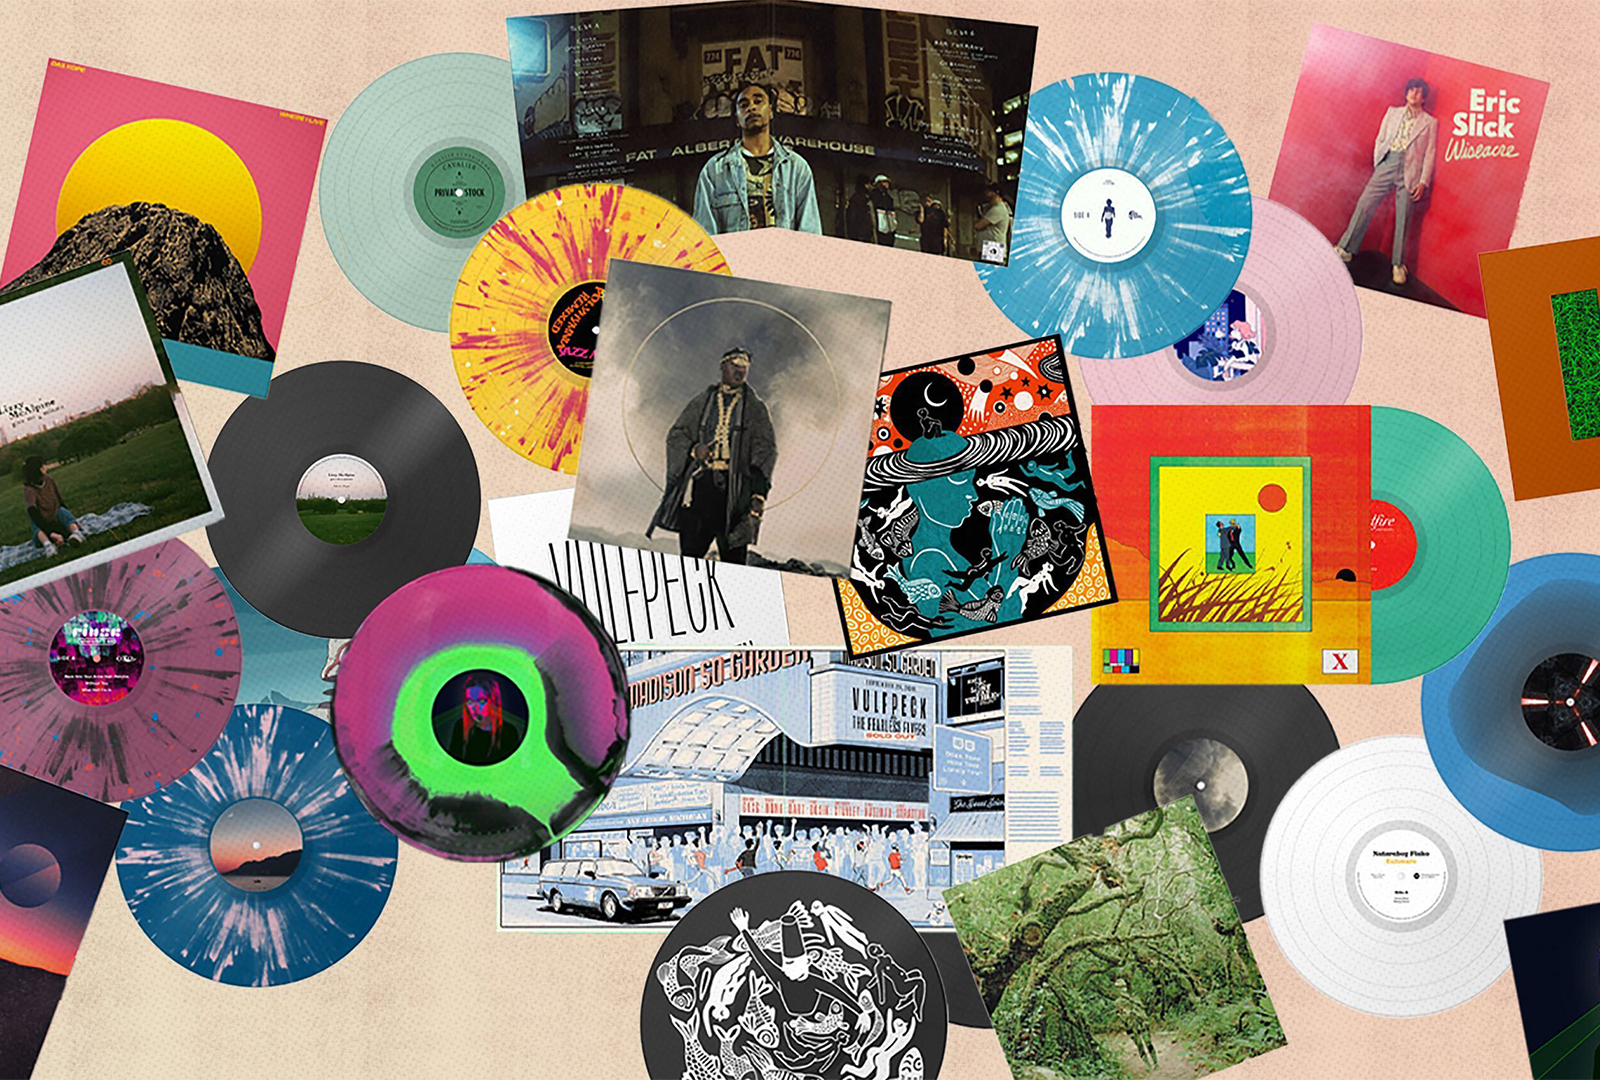 brug sædvanligt Etablering Bandcamp expands vinyl pressing service for artists